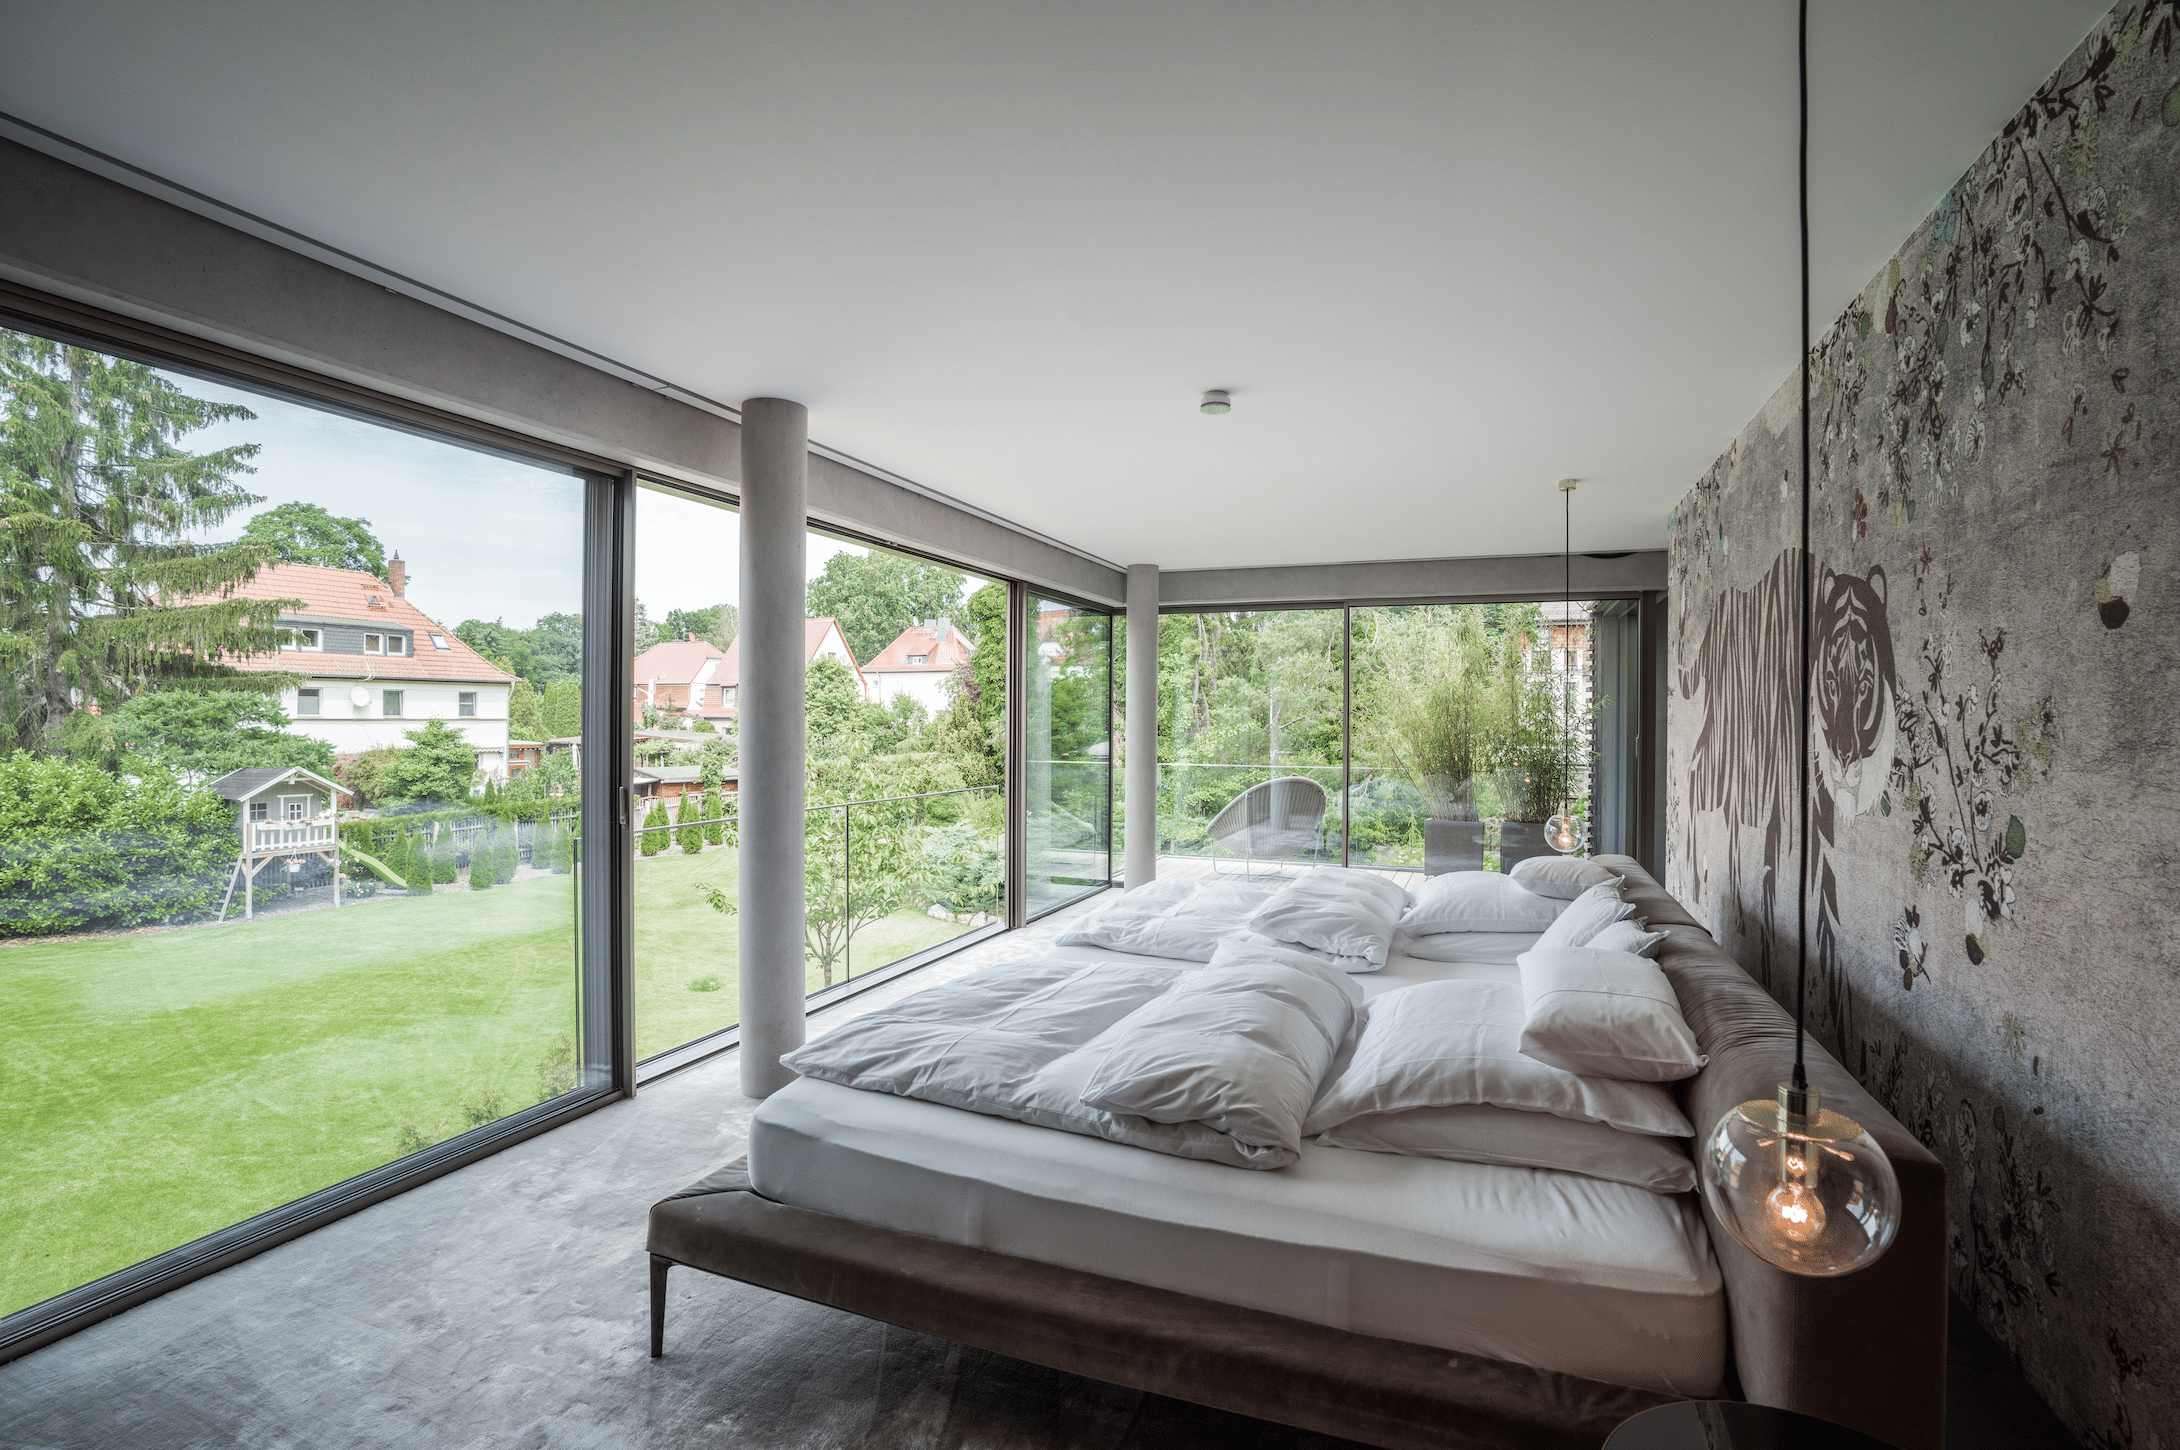 Solarlux zeigt ein helles Schlafzimmer im Industrial Look mit einer gemusterten, tapezierten Wand und einer großer Fensterfront mit Aussicht in den grünen Garten.